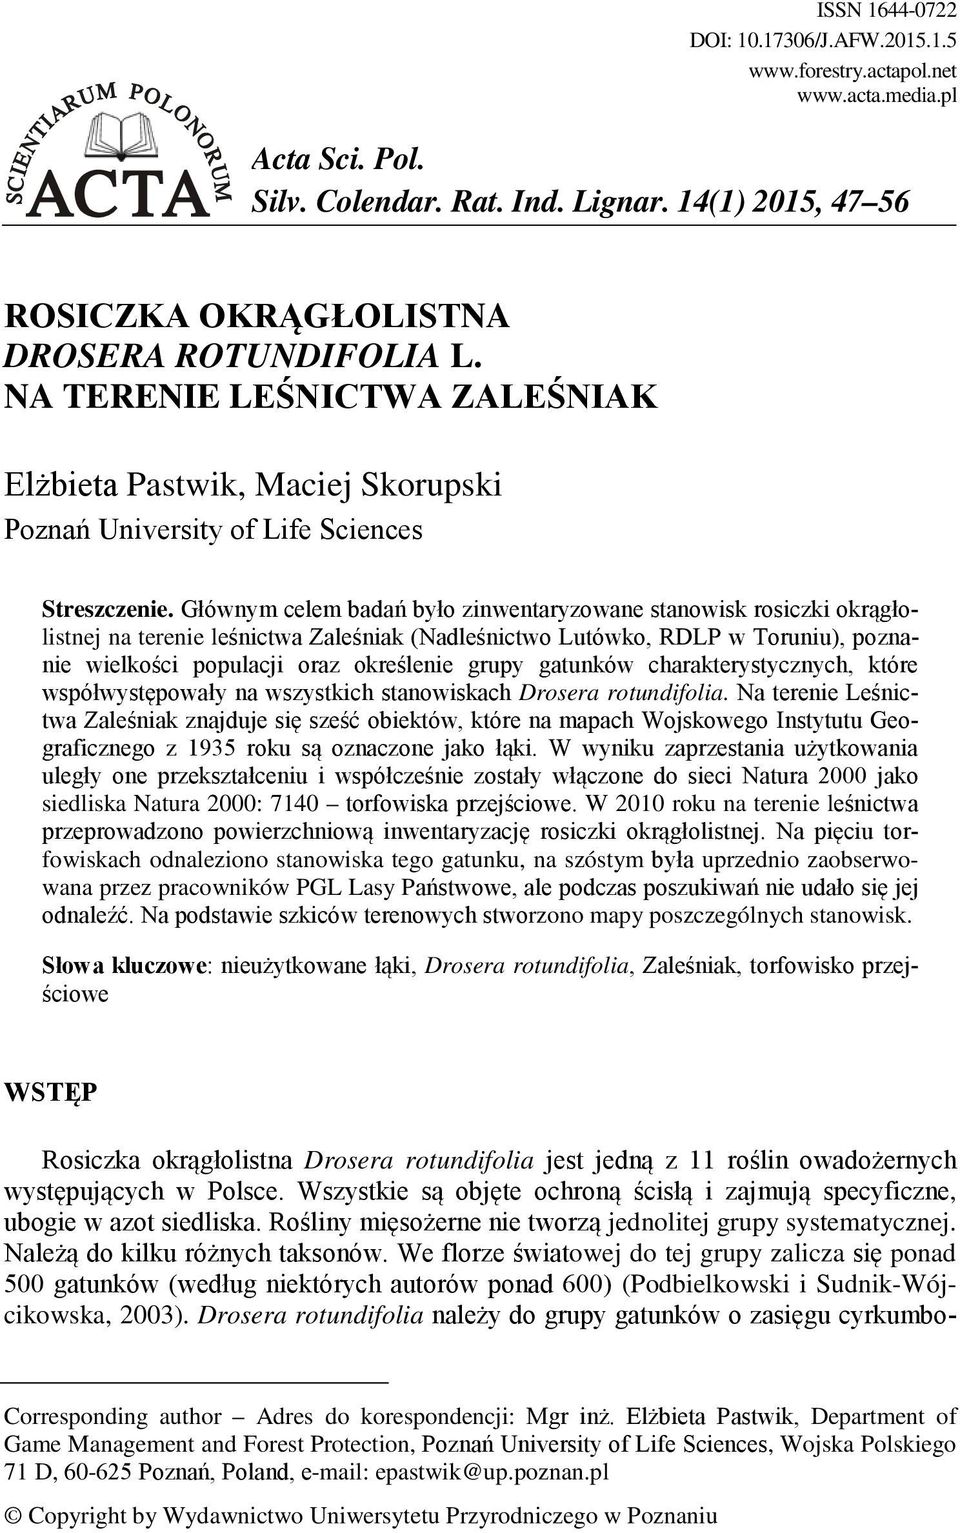 Głównym celem badań było zinwentaryzowane stanowisk rosiczki okrągłolistnej na terenie leśnictwa Zaleśniak (Nadleśnictwo Lutówko, RDLP w Toruniu), poznanie wielkości populacji oraz określenie grupy